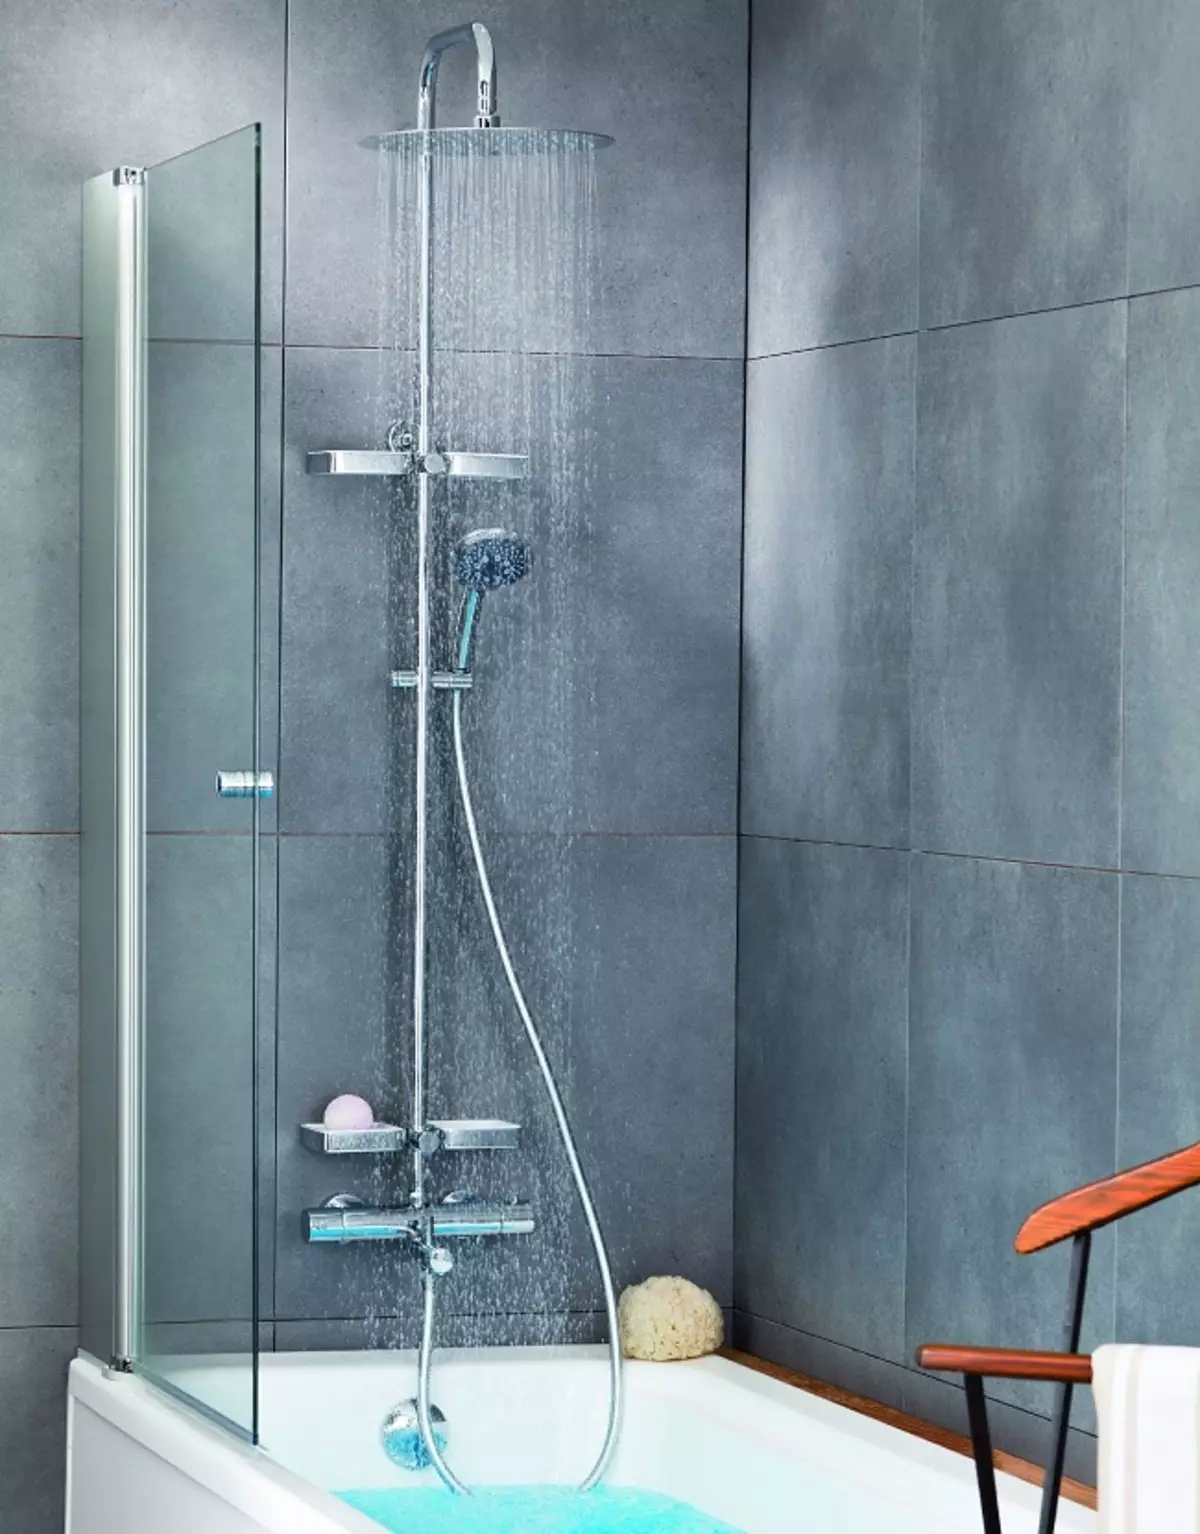 Rafturi de duș: soiuri de sisteme de duș pentru baie. Ceea ce este inclus în setul cu cască set pentru suflet? BRAVAT, LEMARK BRANDS Review și altele 21374_14